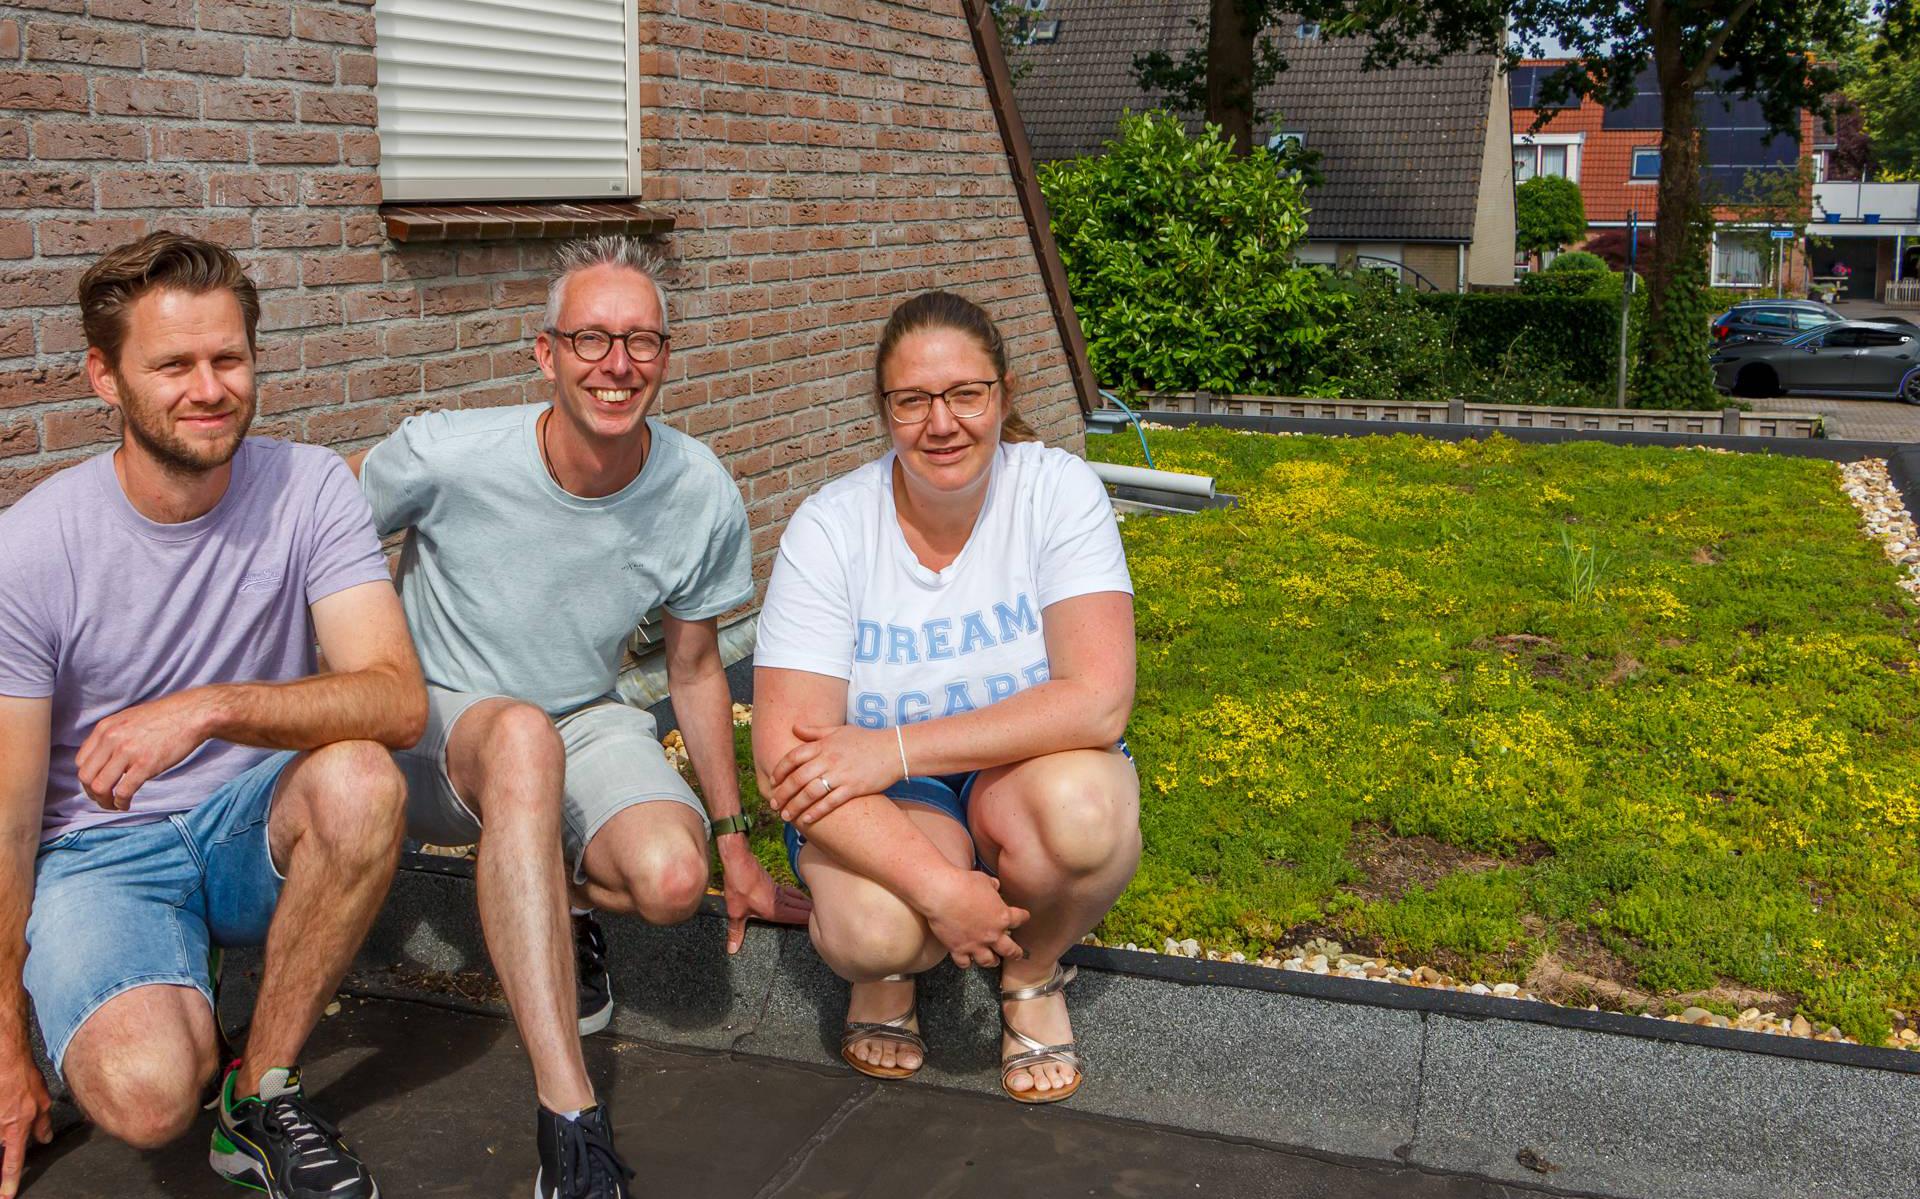 De bewoners Marten Postma, Martijn Plas en Willemijn Gortworst zij zeer te spreken over hun sedumdak.